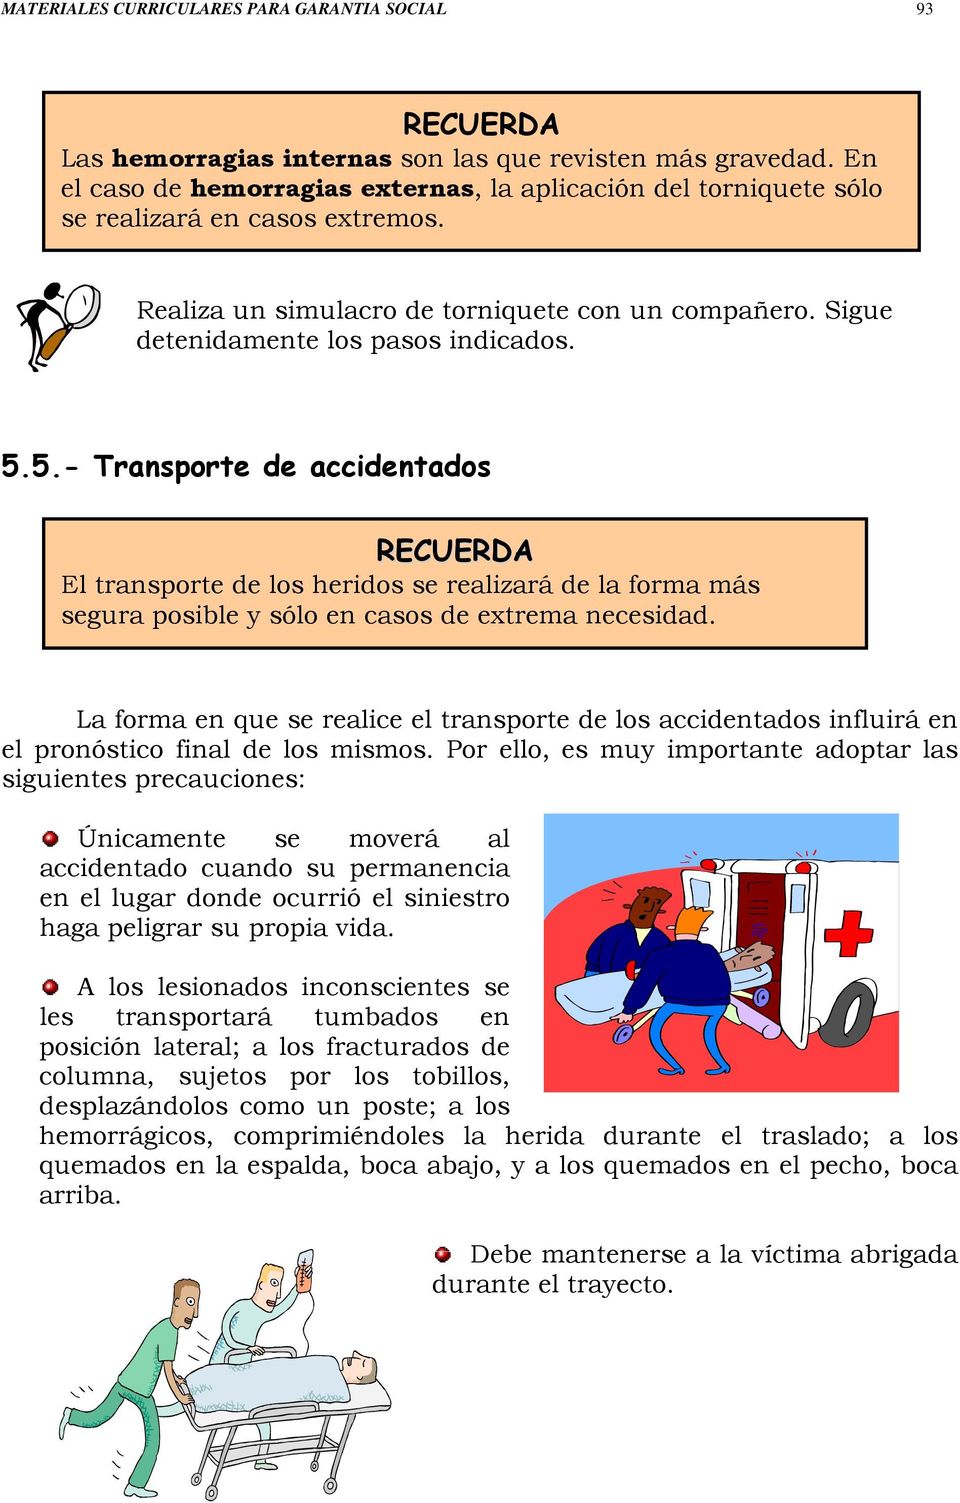 5.- Transporte de accidentados RECUERDA El transporte de los heridos se realizará de la forma más segura posible y sólo en casos de extrema necesidad.